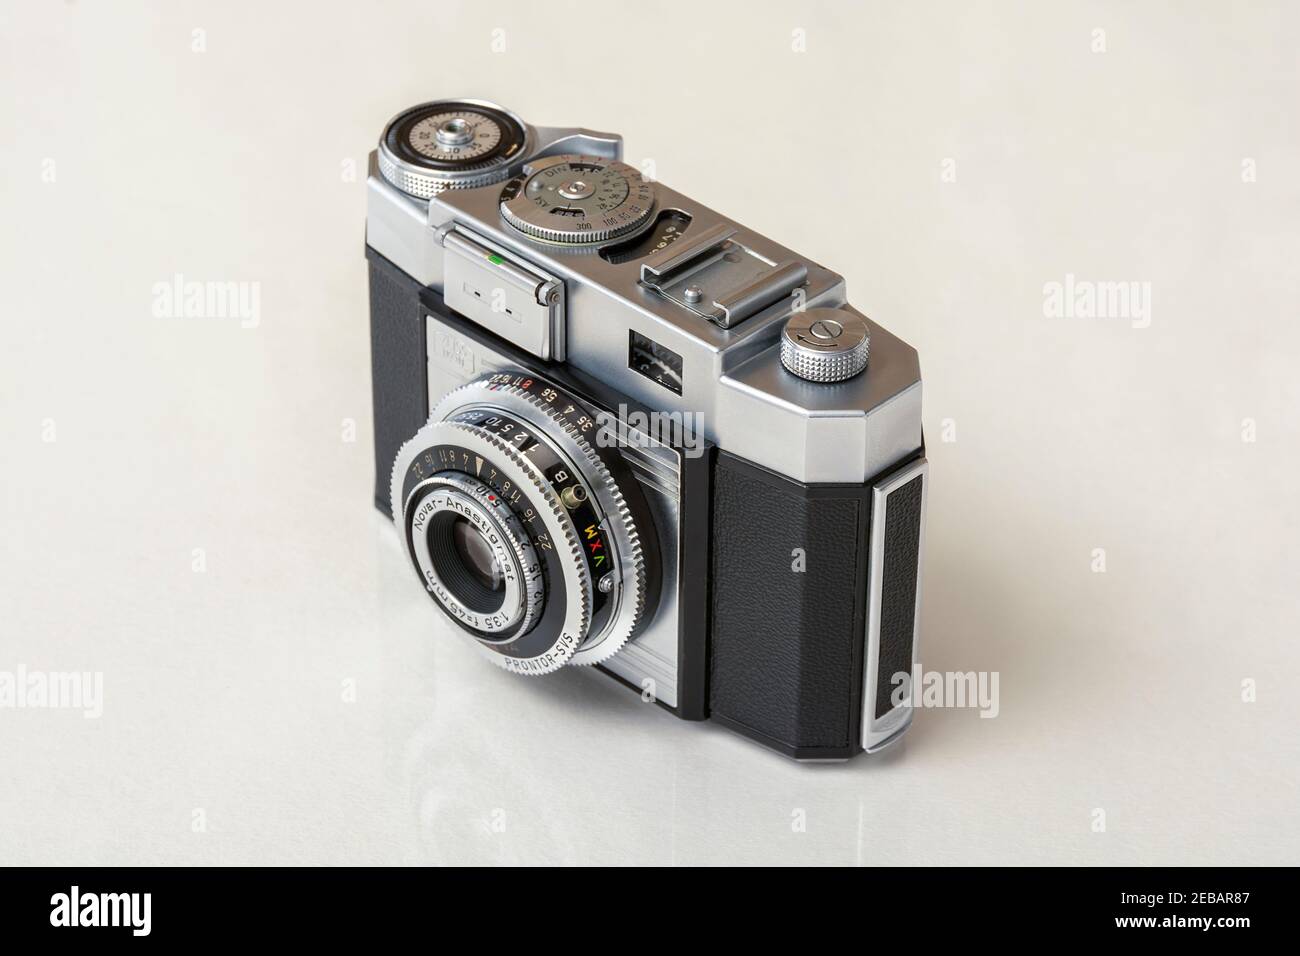 Contina IIa - ancien appareil photo de film analogique vintage, années 1970, photographie traditionnelle, design d'appareil photo classique, boîtier en métal aluminium Banque D'Images